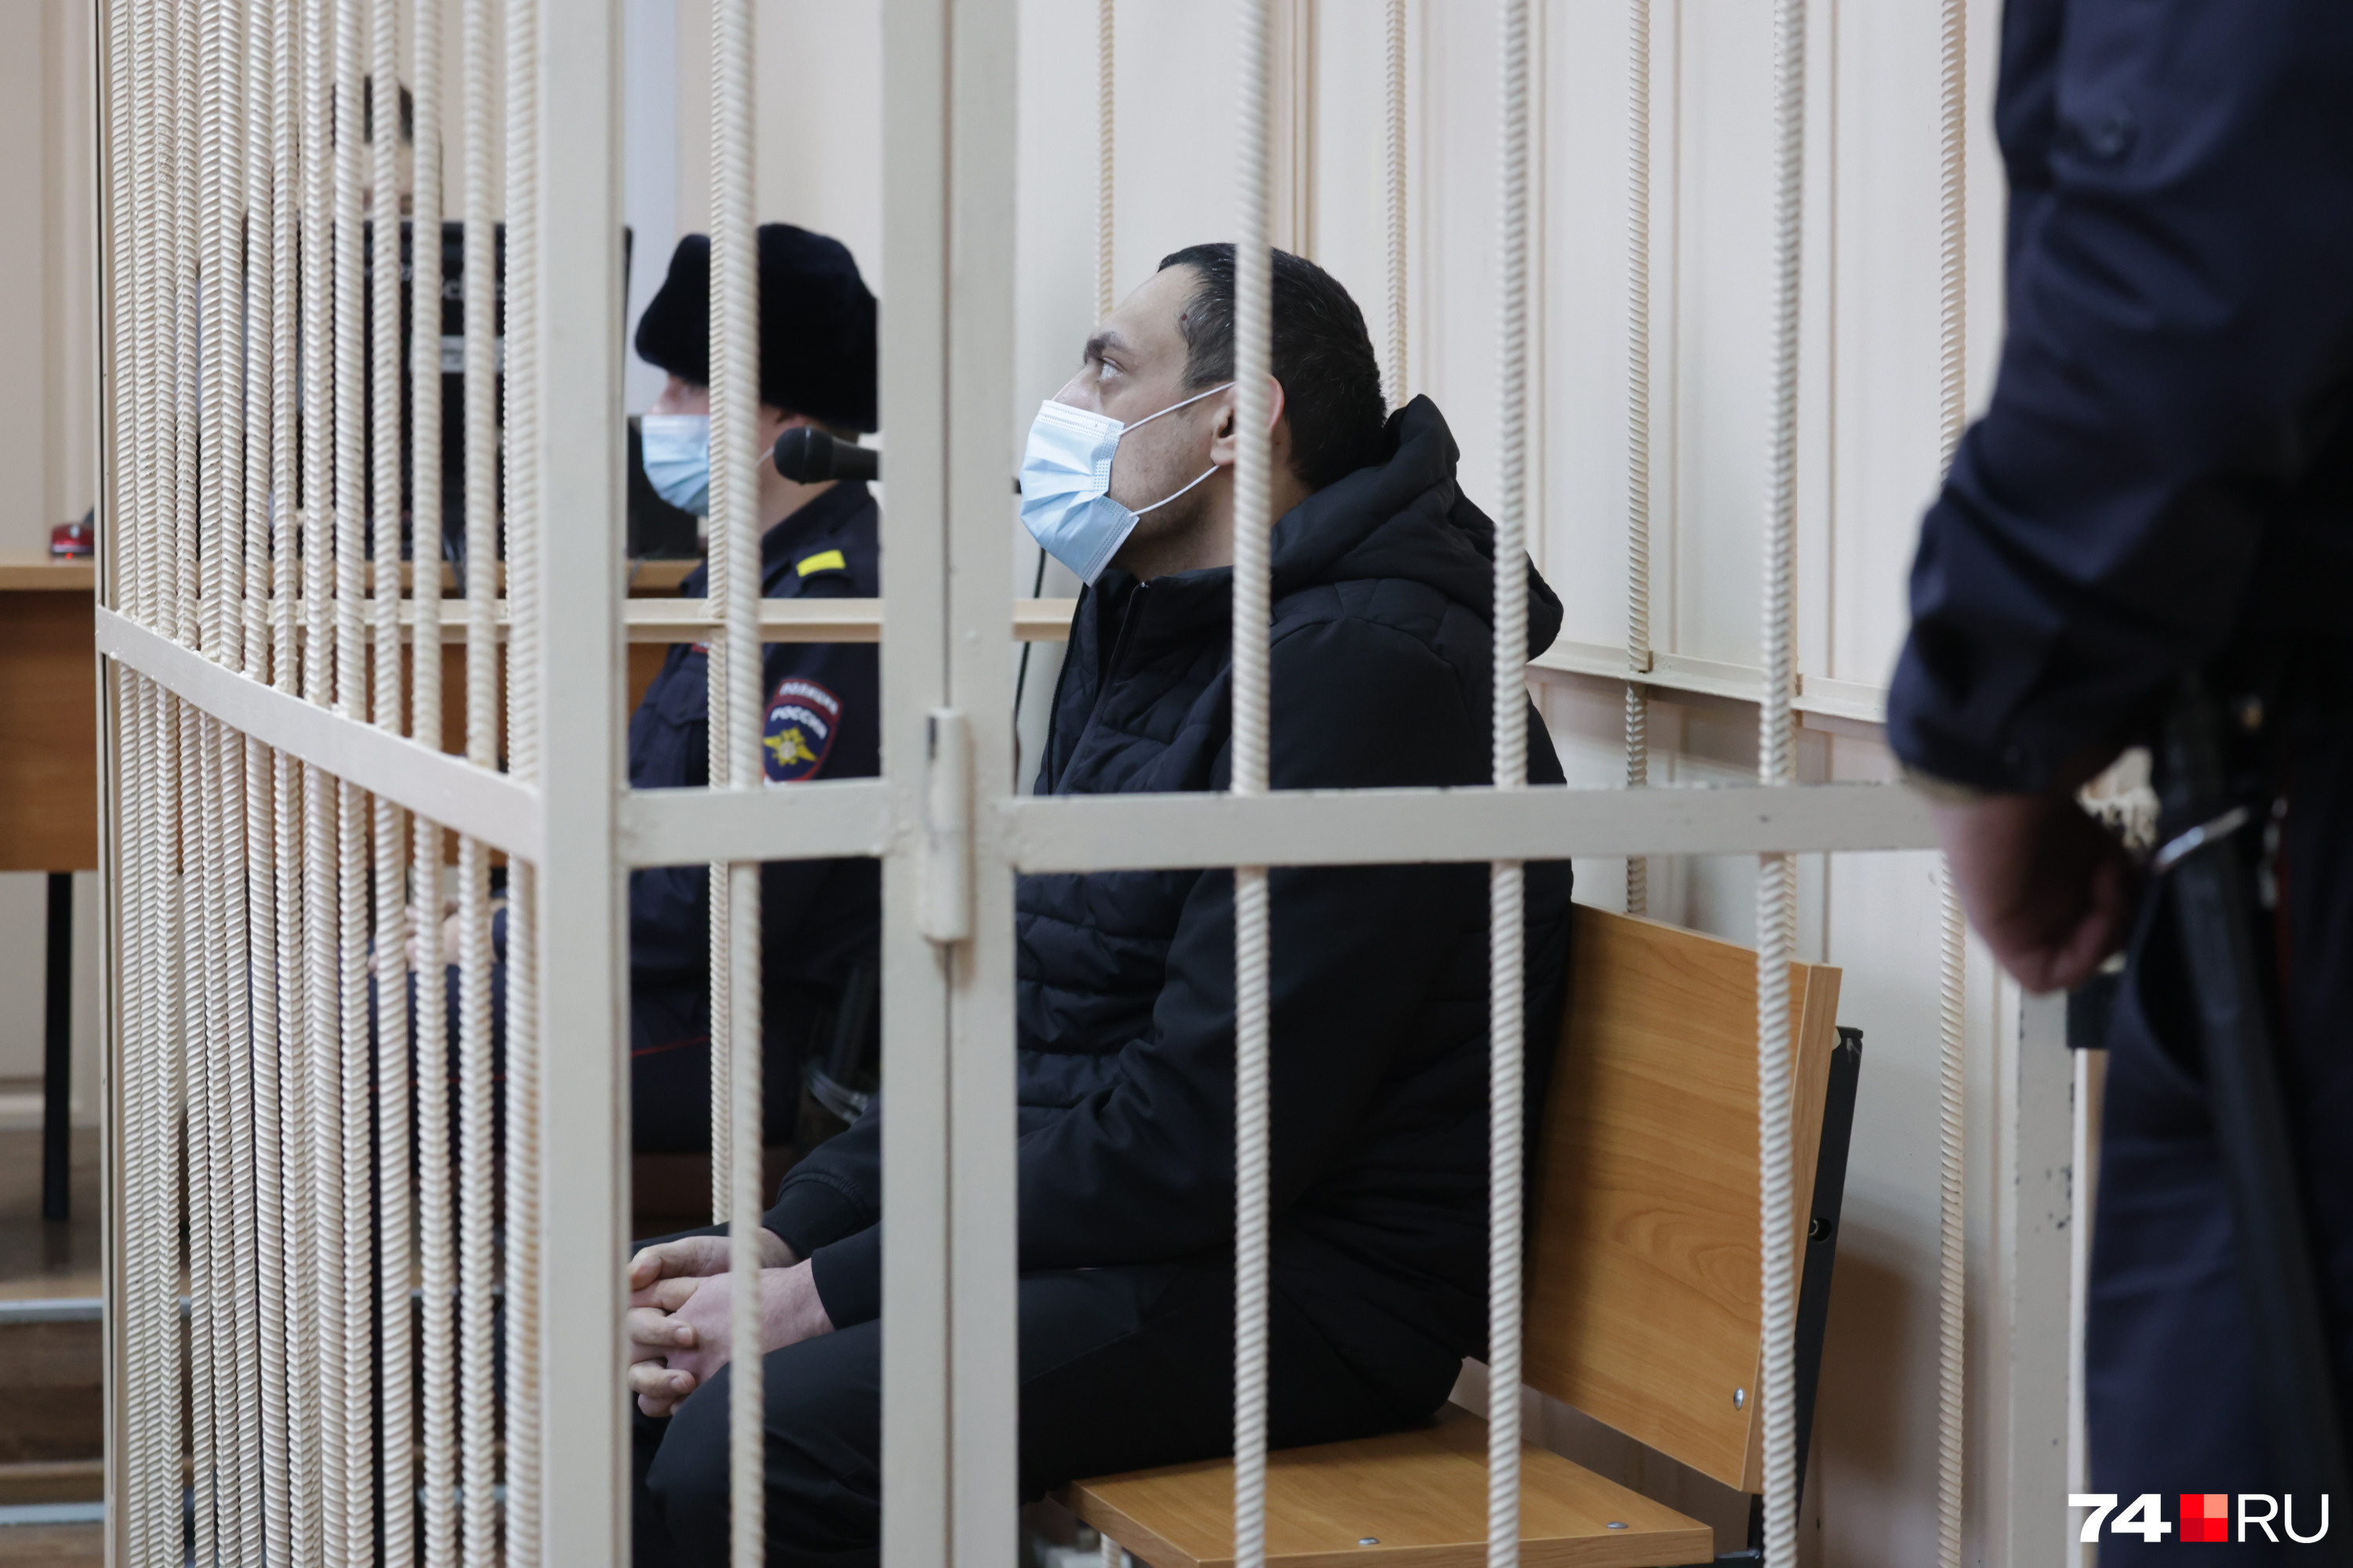 Александр Рудов адвоката слушал молча и после ее выступления добавить ничего не захотел